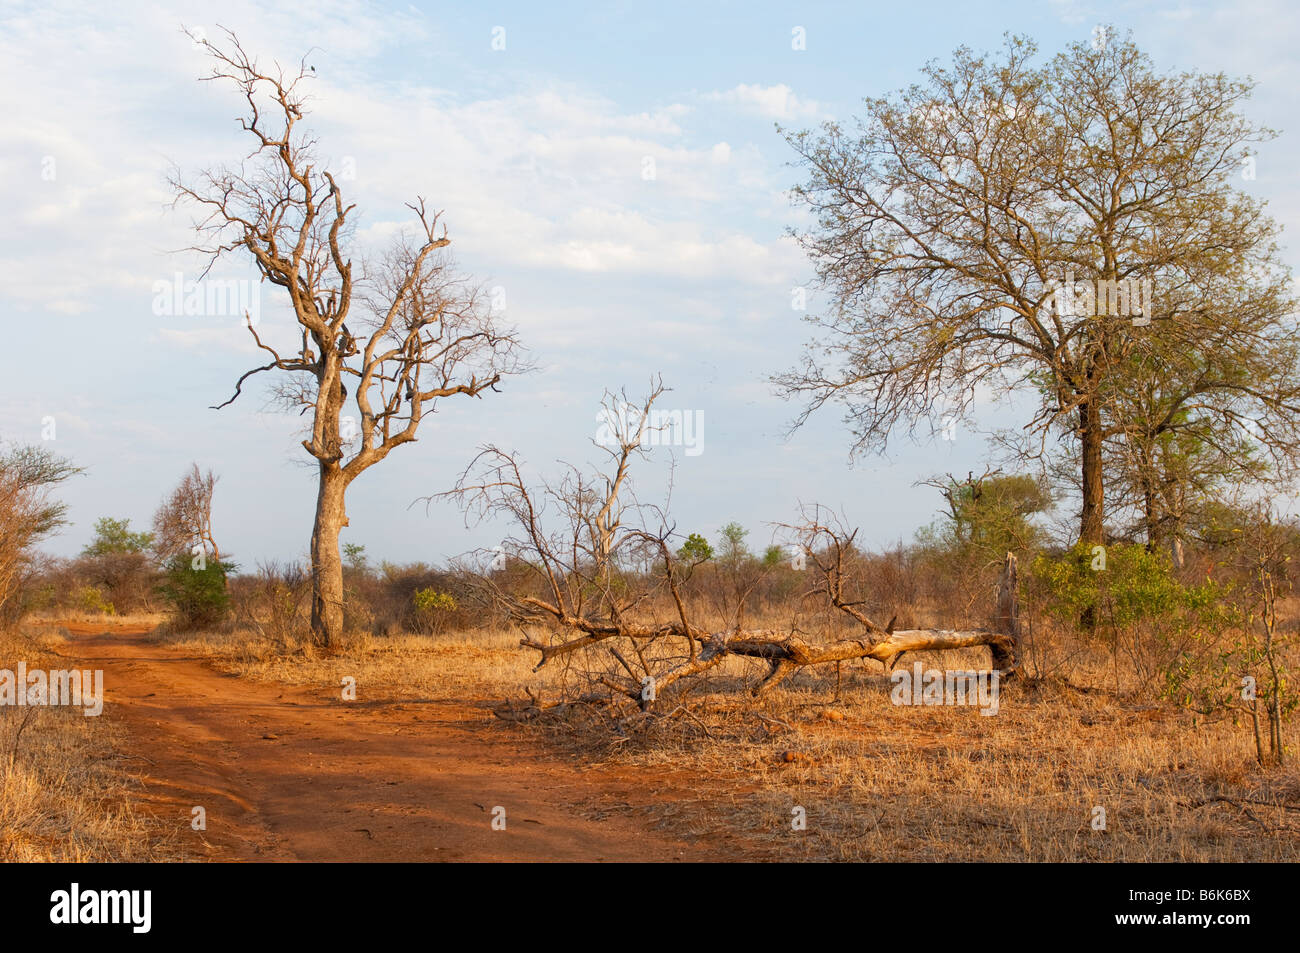 La masse de la terre rouge du sud afrique-savanne savane bush afrique du sud paysage forestiers hors route acacia Robinia acacia arbres bosses Banque D'Images